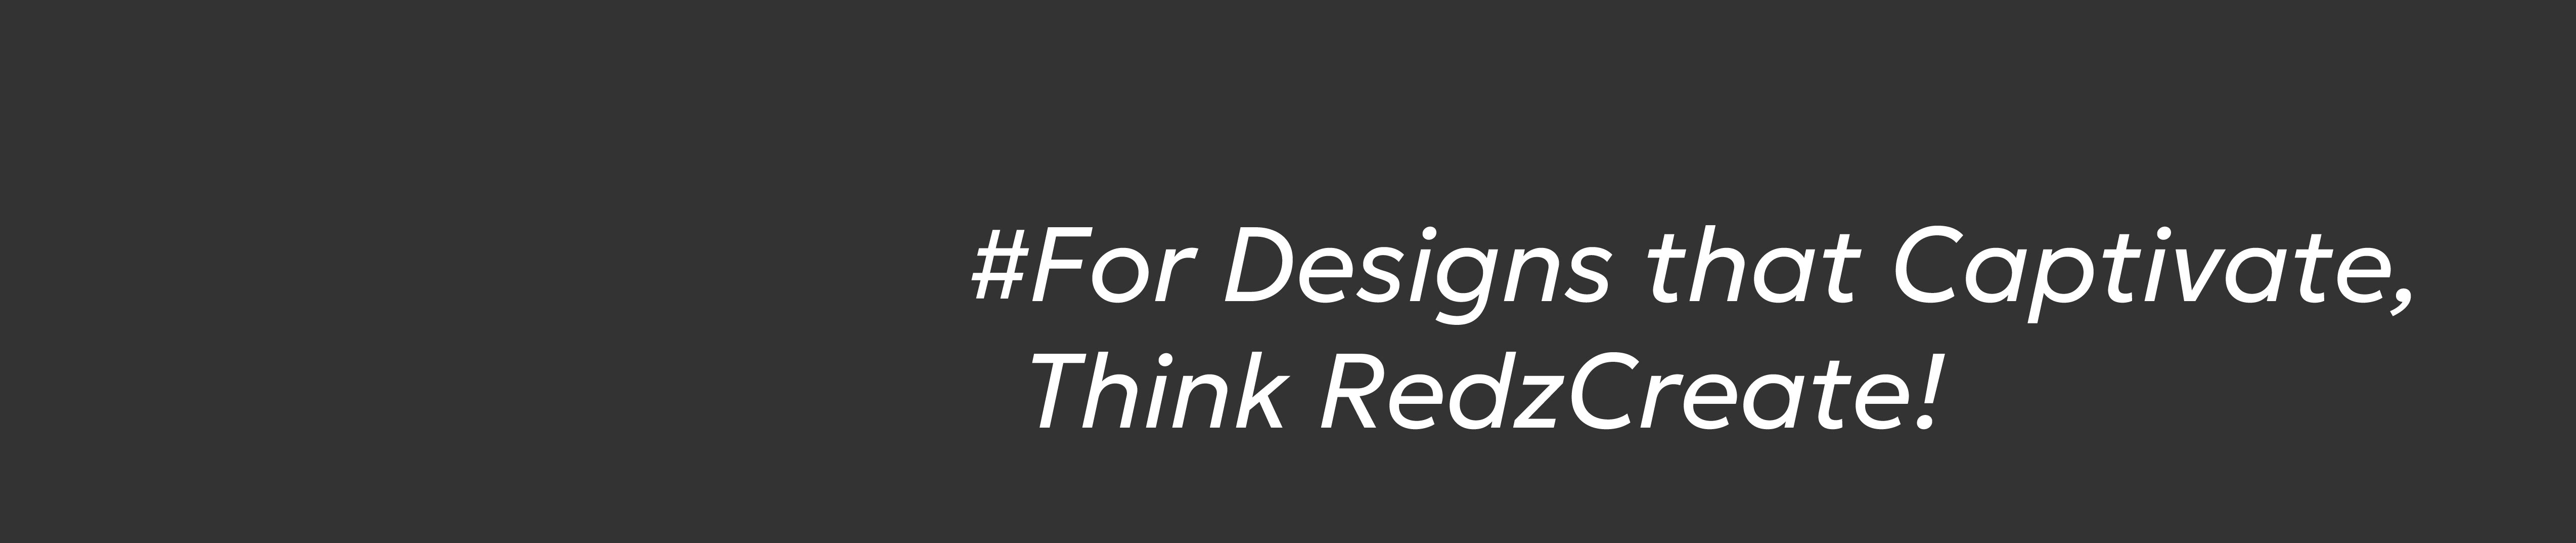 Redz Create's profile banner